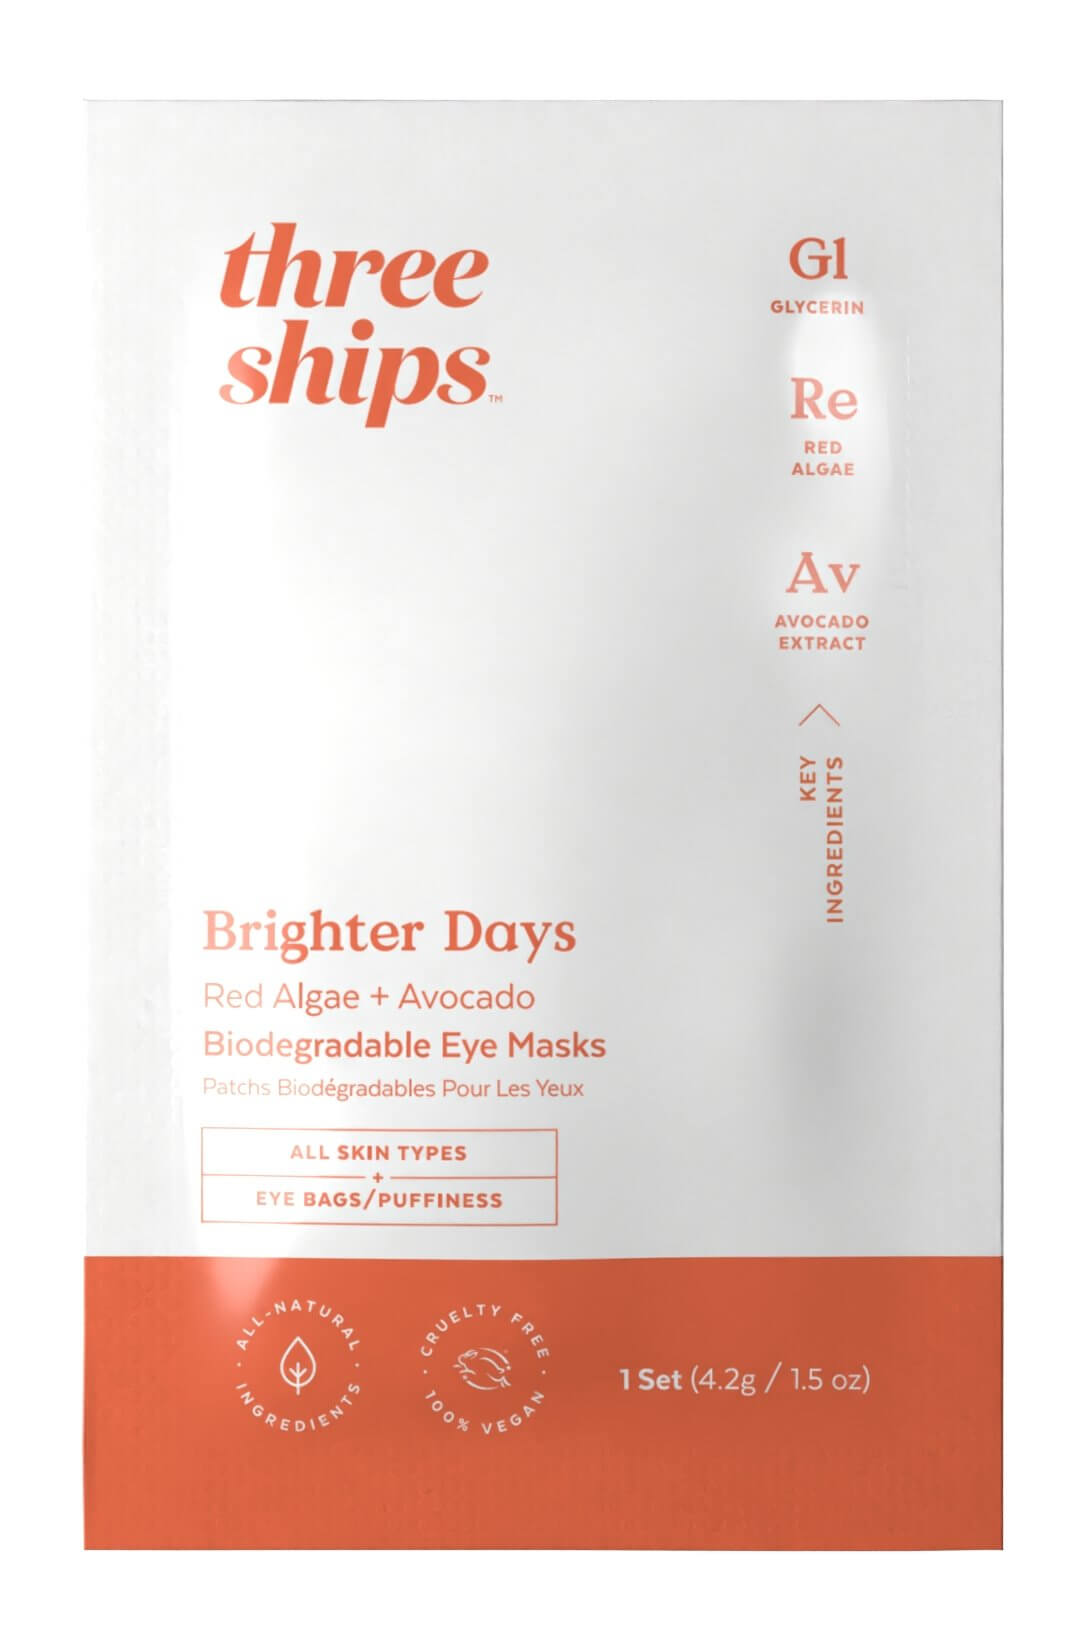 Brighter Days Sachet Three Ships Natural Vegan Cruelty-free Skincare